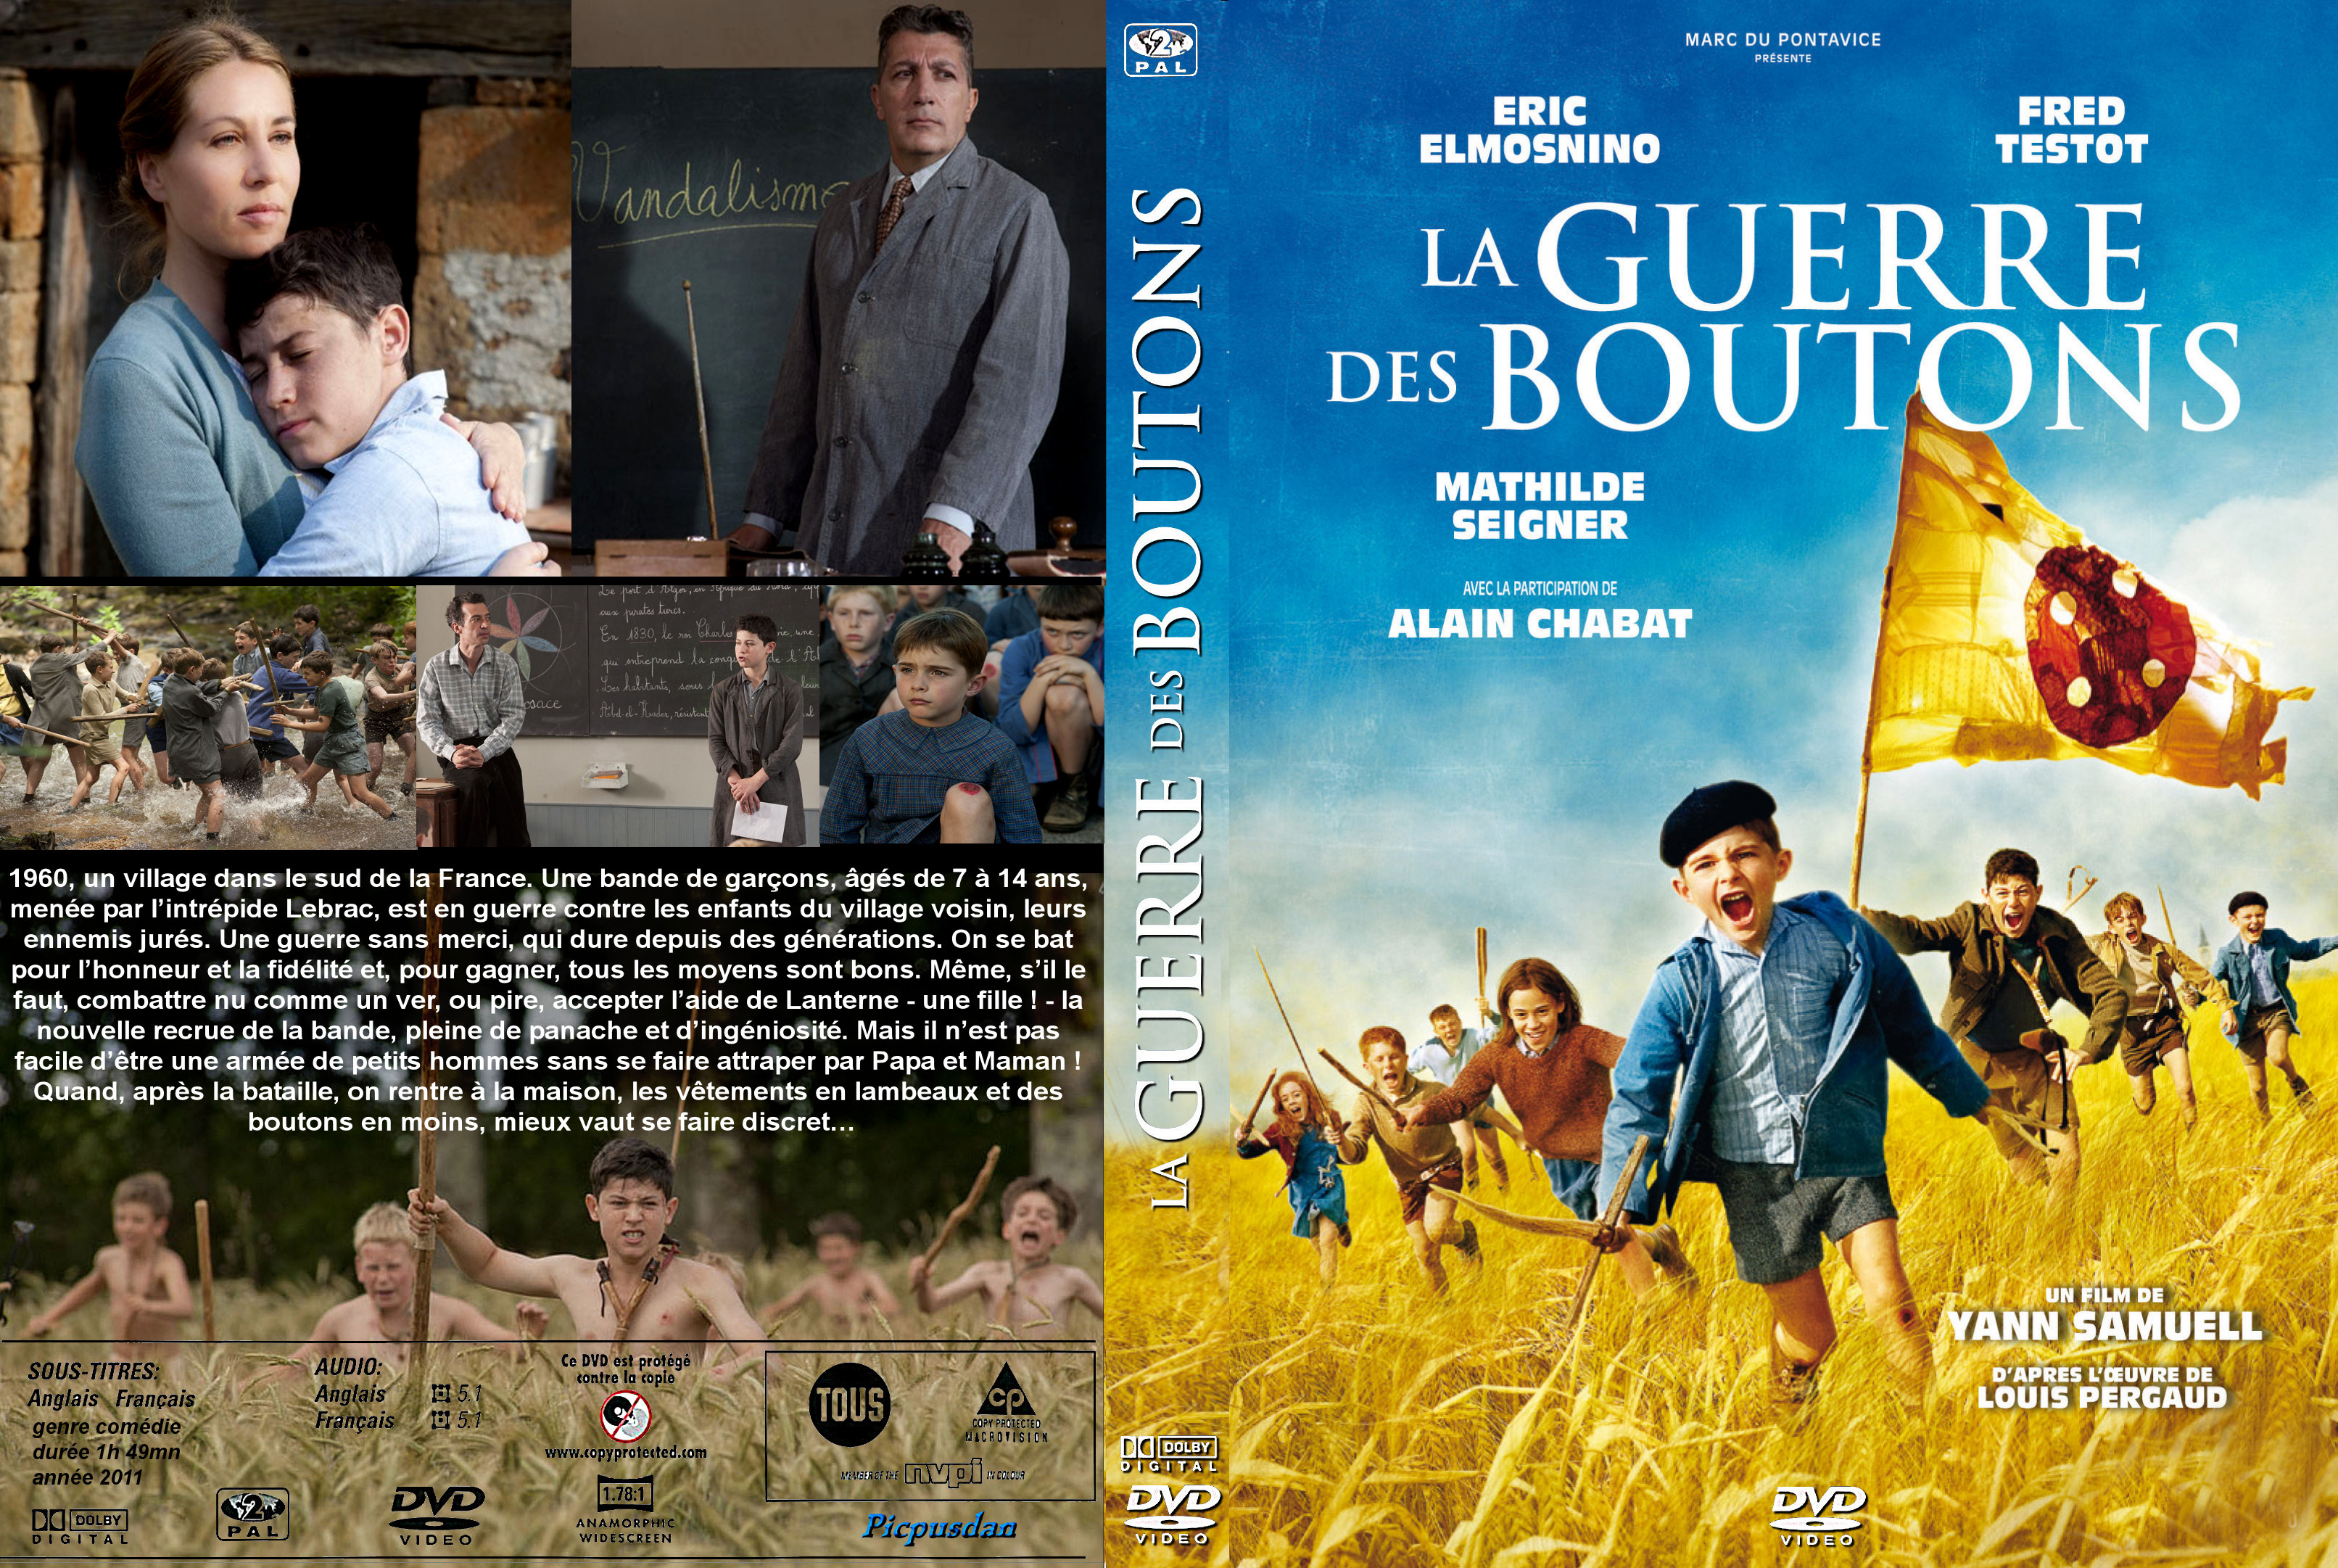 Jaquette DVD La guerre des boutons (2011) custom